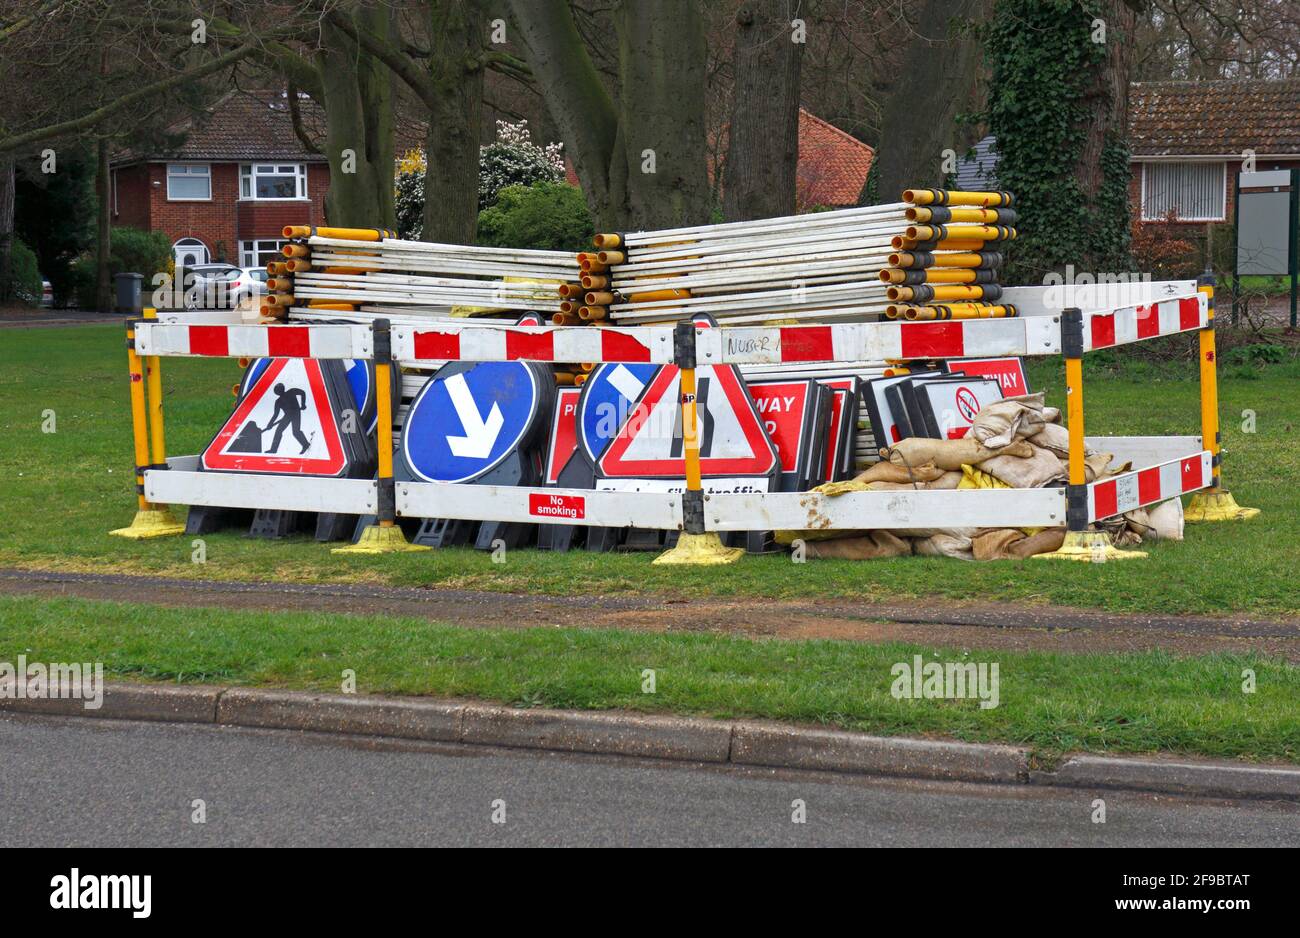 Barrieren und Schilder wurden in einem Wohngebiet in Hellesdon, Norfolk, England, Großbritannien, abgelagert und auf einem Grün gelagert. Stockfoto